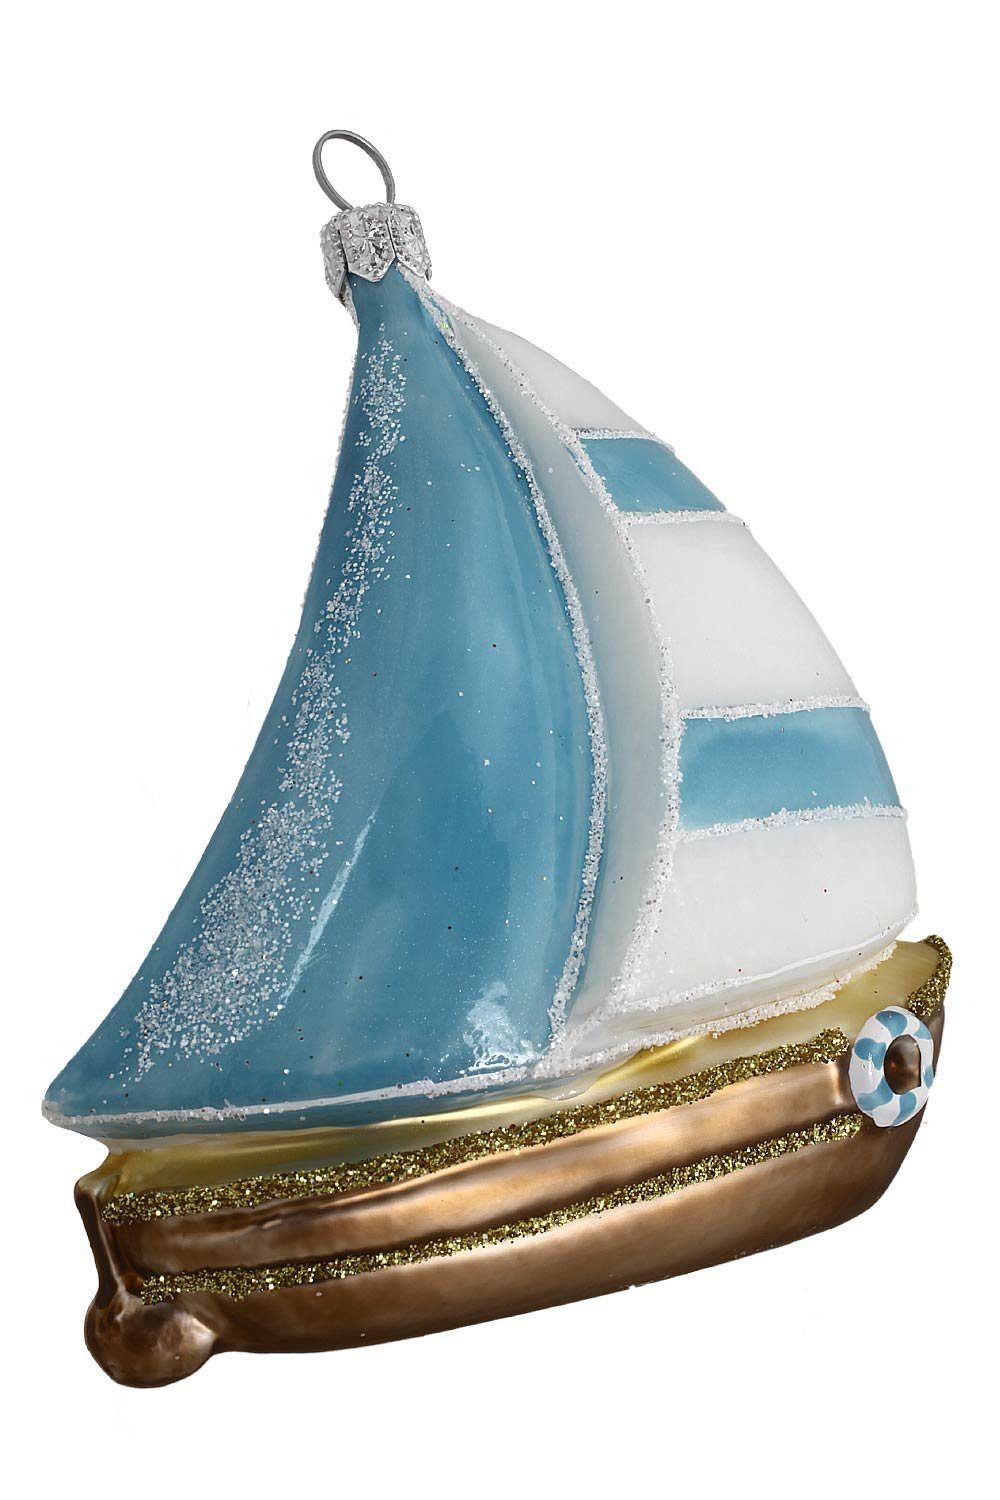 Weihnachtskontor - handdekoriert mundgeblasen - Hamburger Dekohänger Segelschiff Christbaumschmuck blau-weiß,